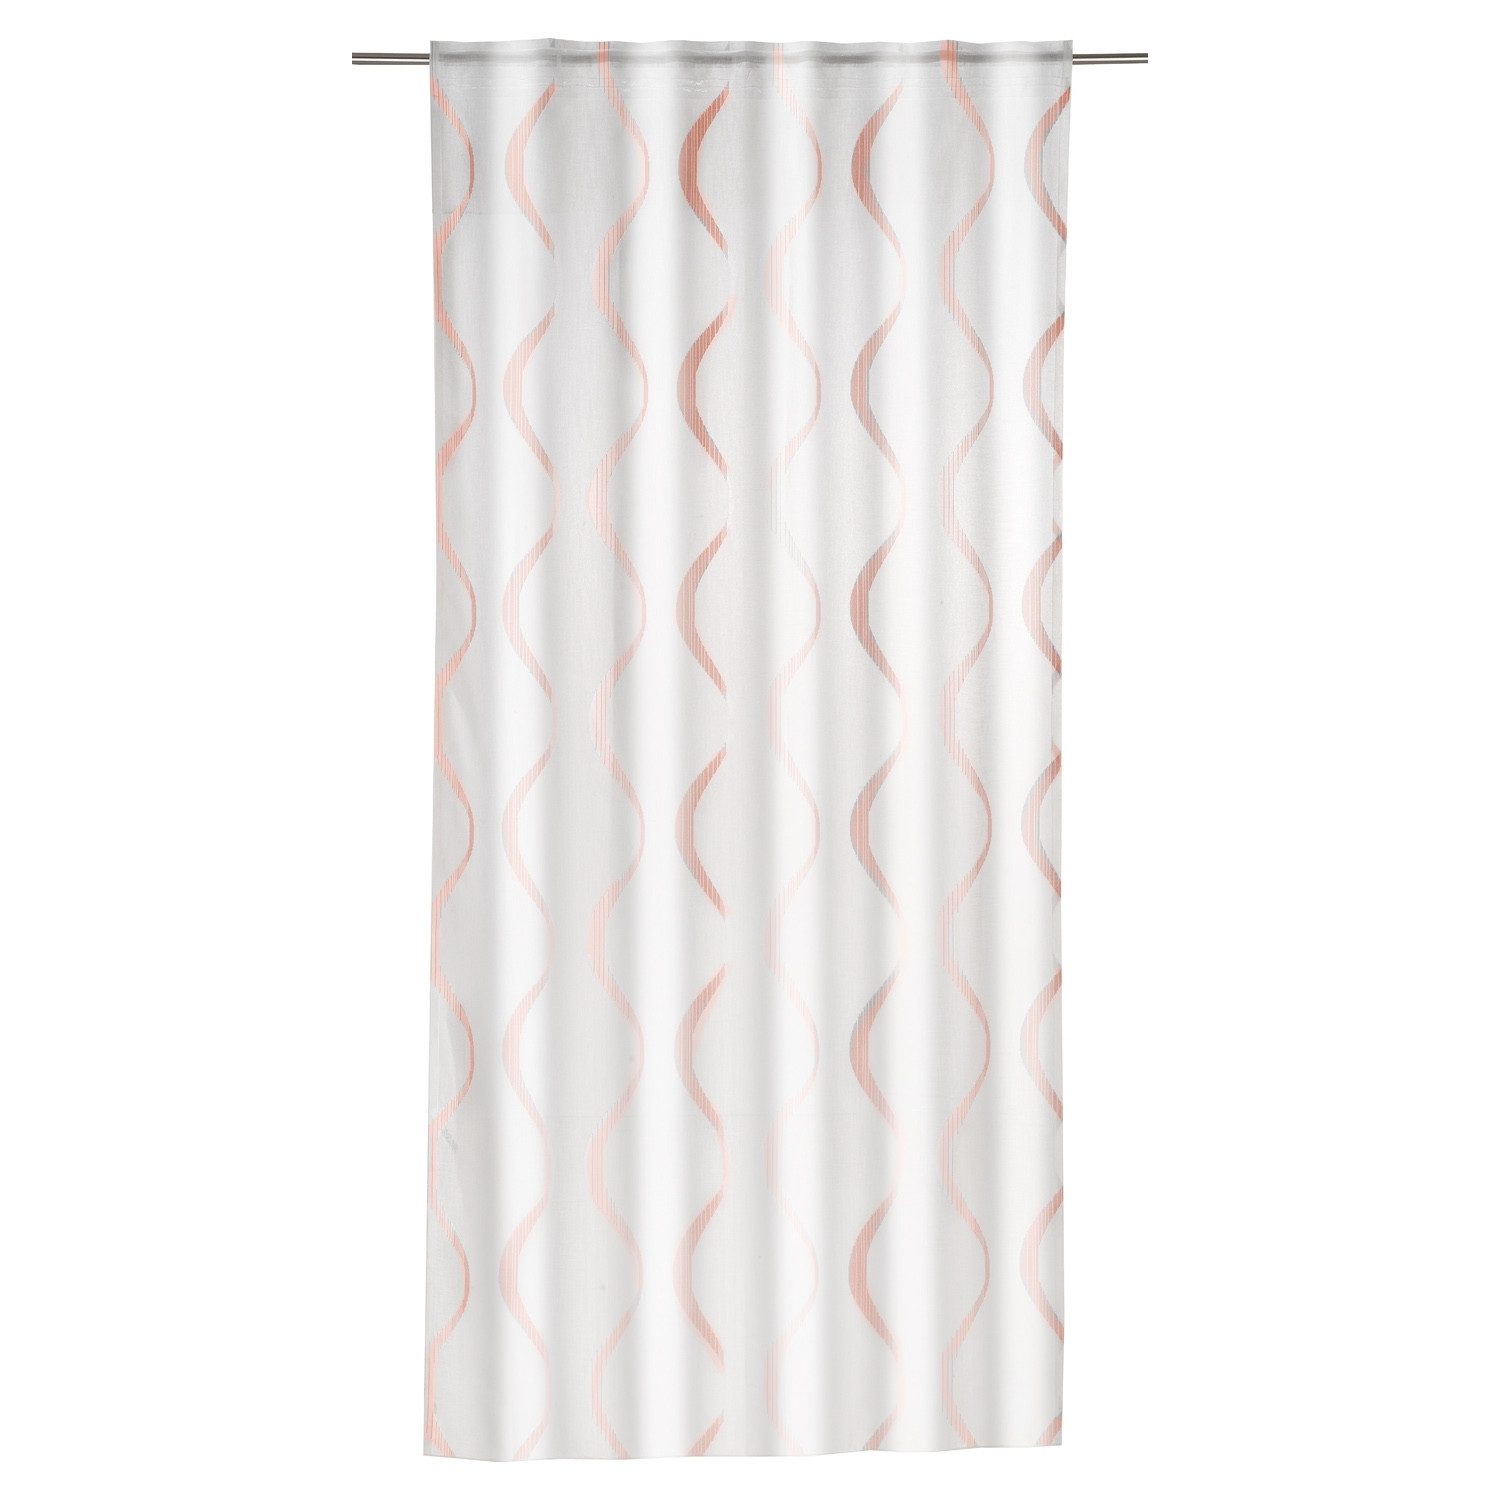 Vorhang CAMPINO, Verd. Schlaufen, Weiß, L 245 x B 135 cm, verdeckte Schlaufen (1 St), halbtransparent, Polyester